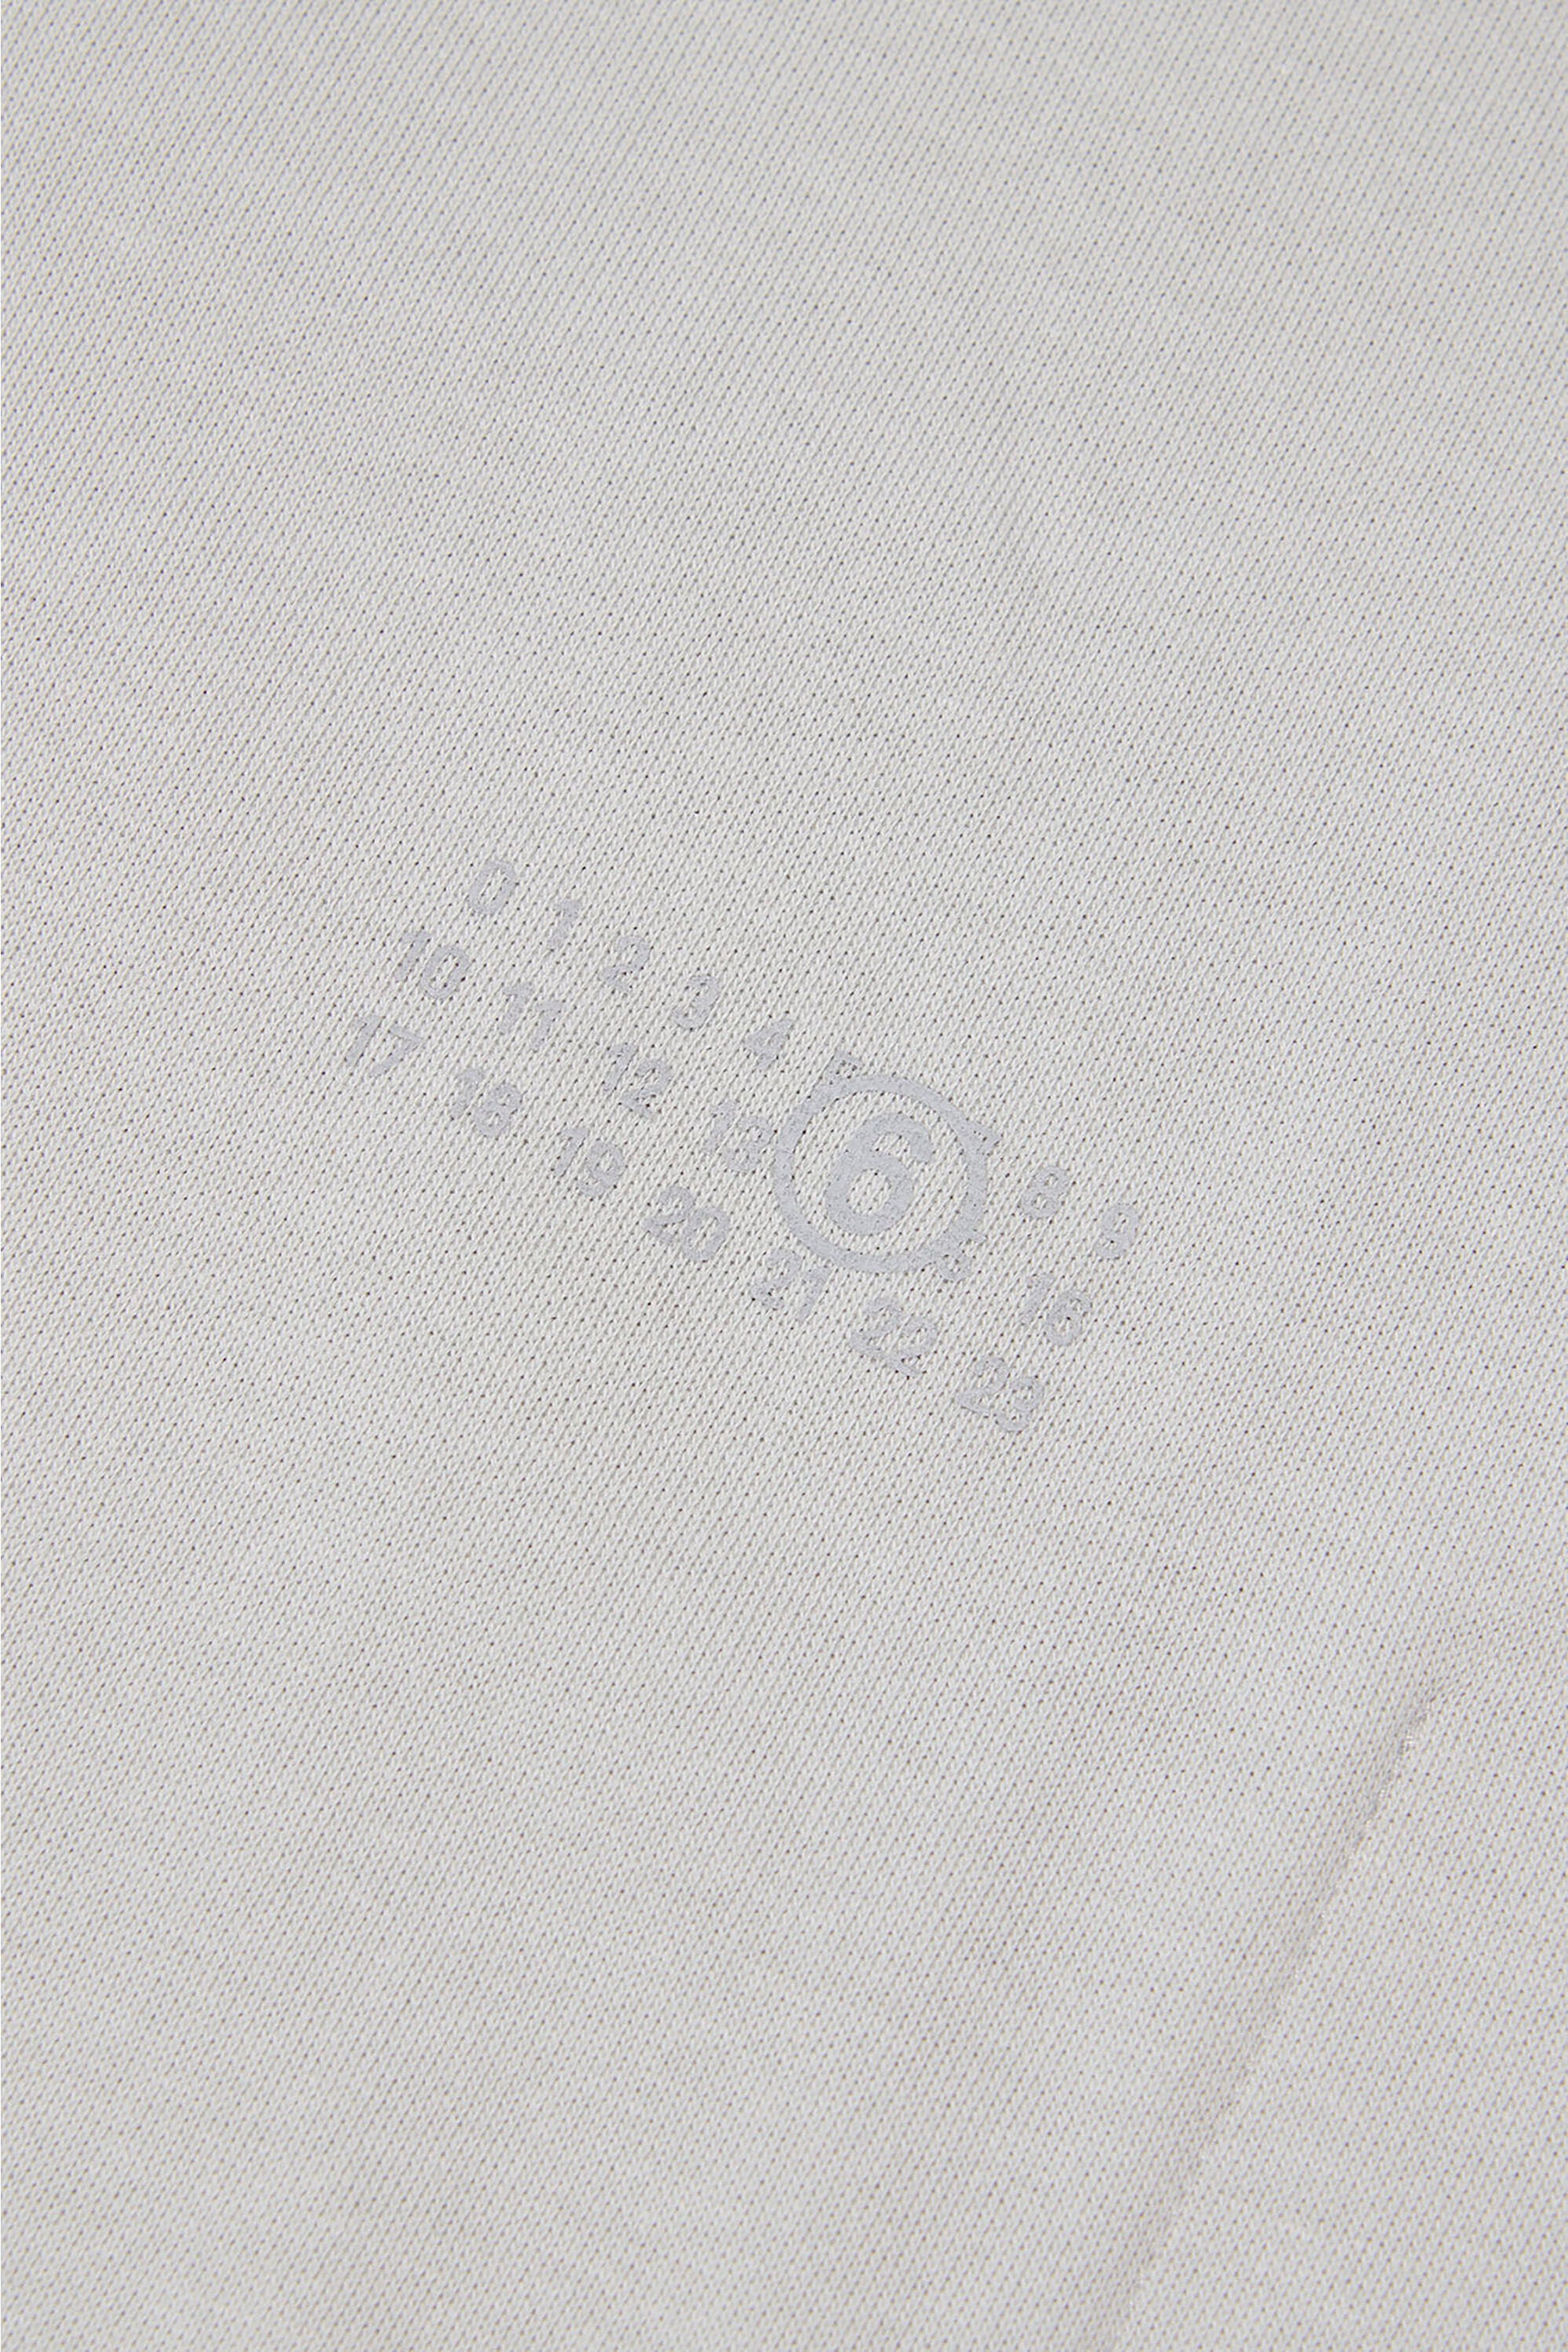 数字ロゴのブランドロゴ入りノースリーブスウェットシャツ